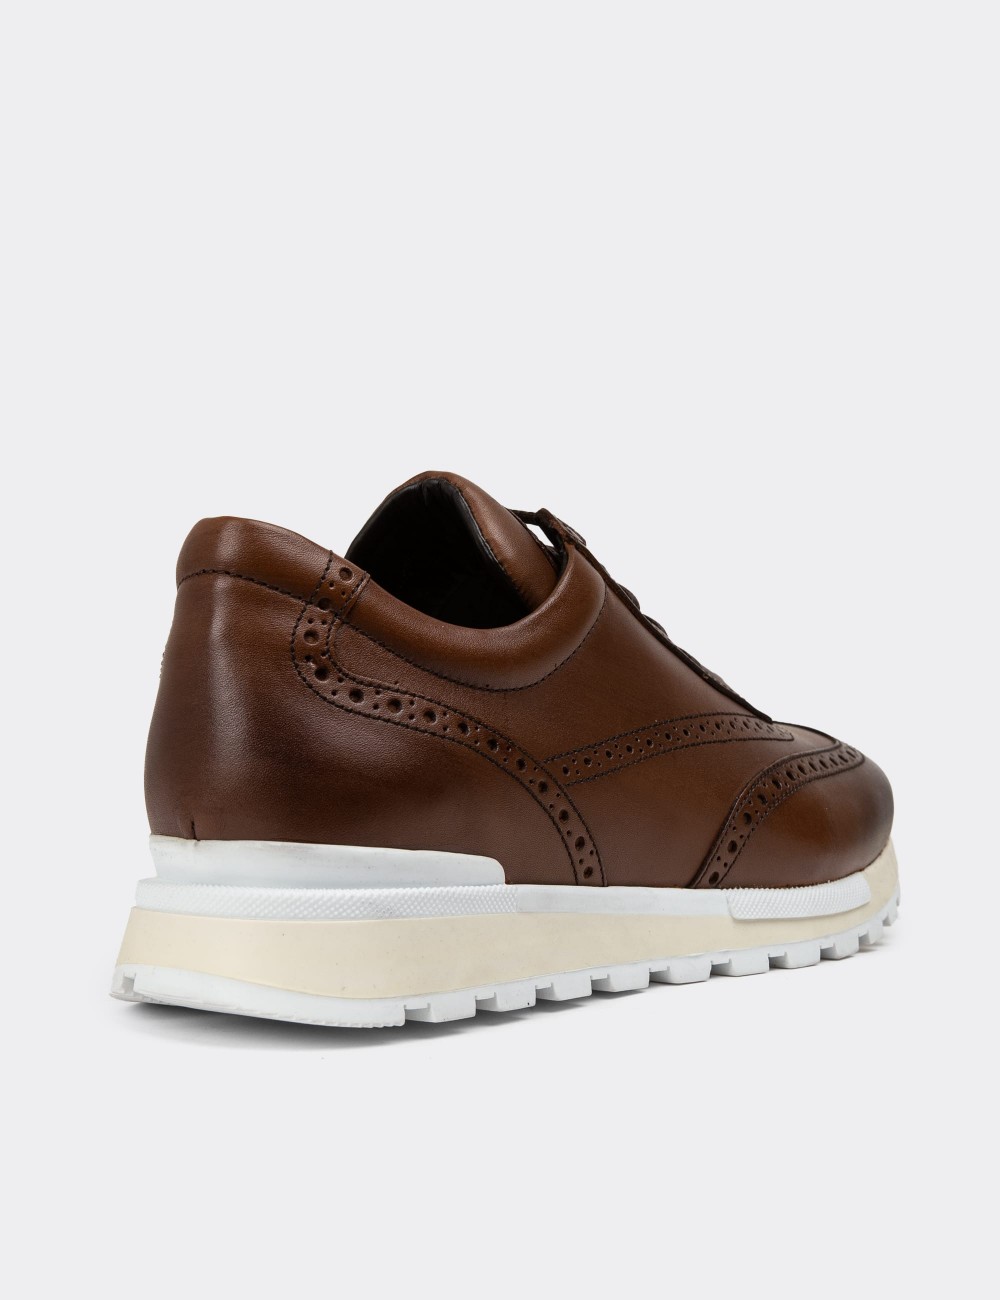 Tan Leather Sneakers - 00750MTBAT05